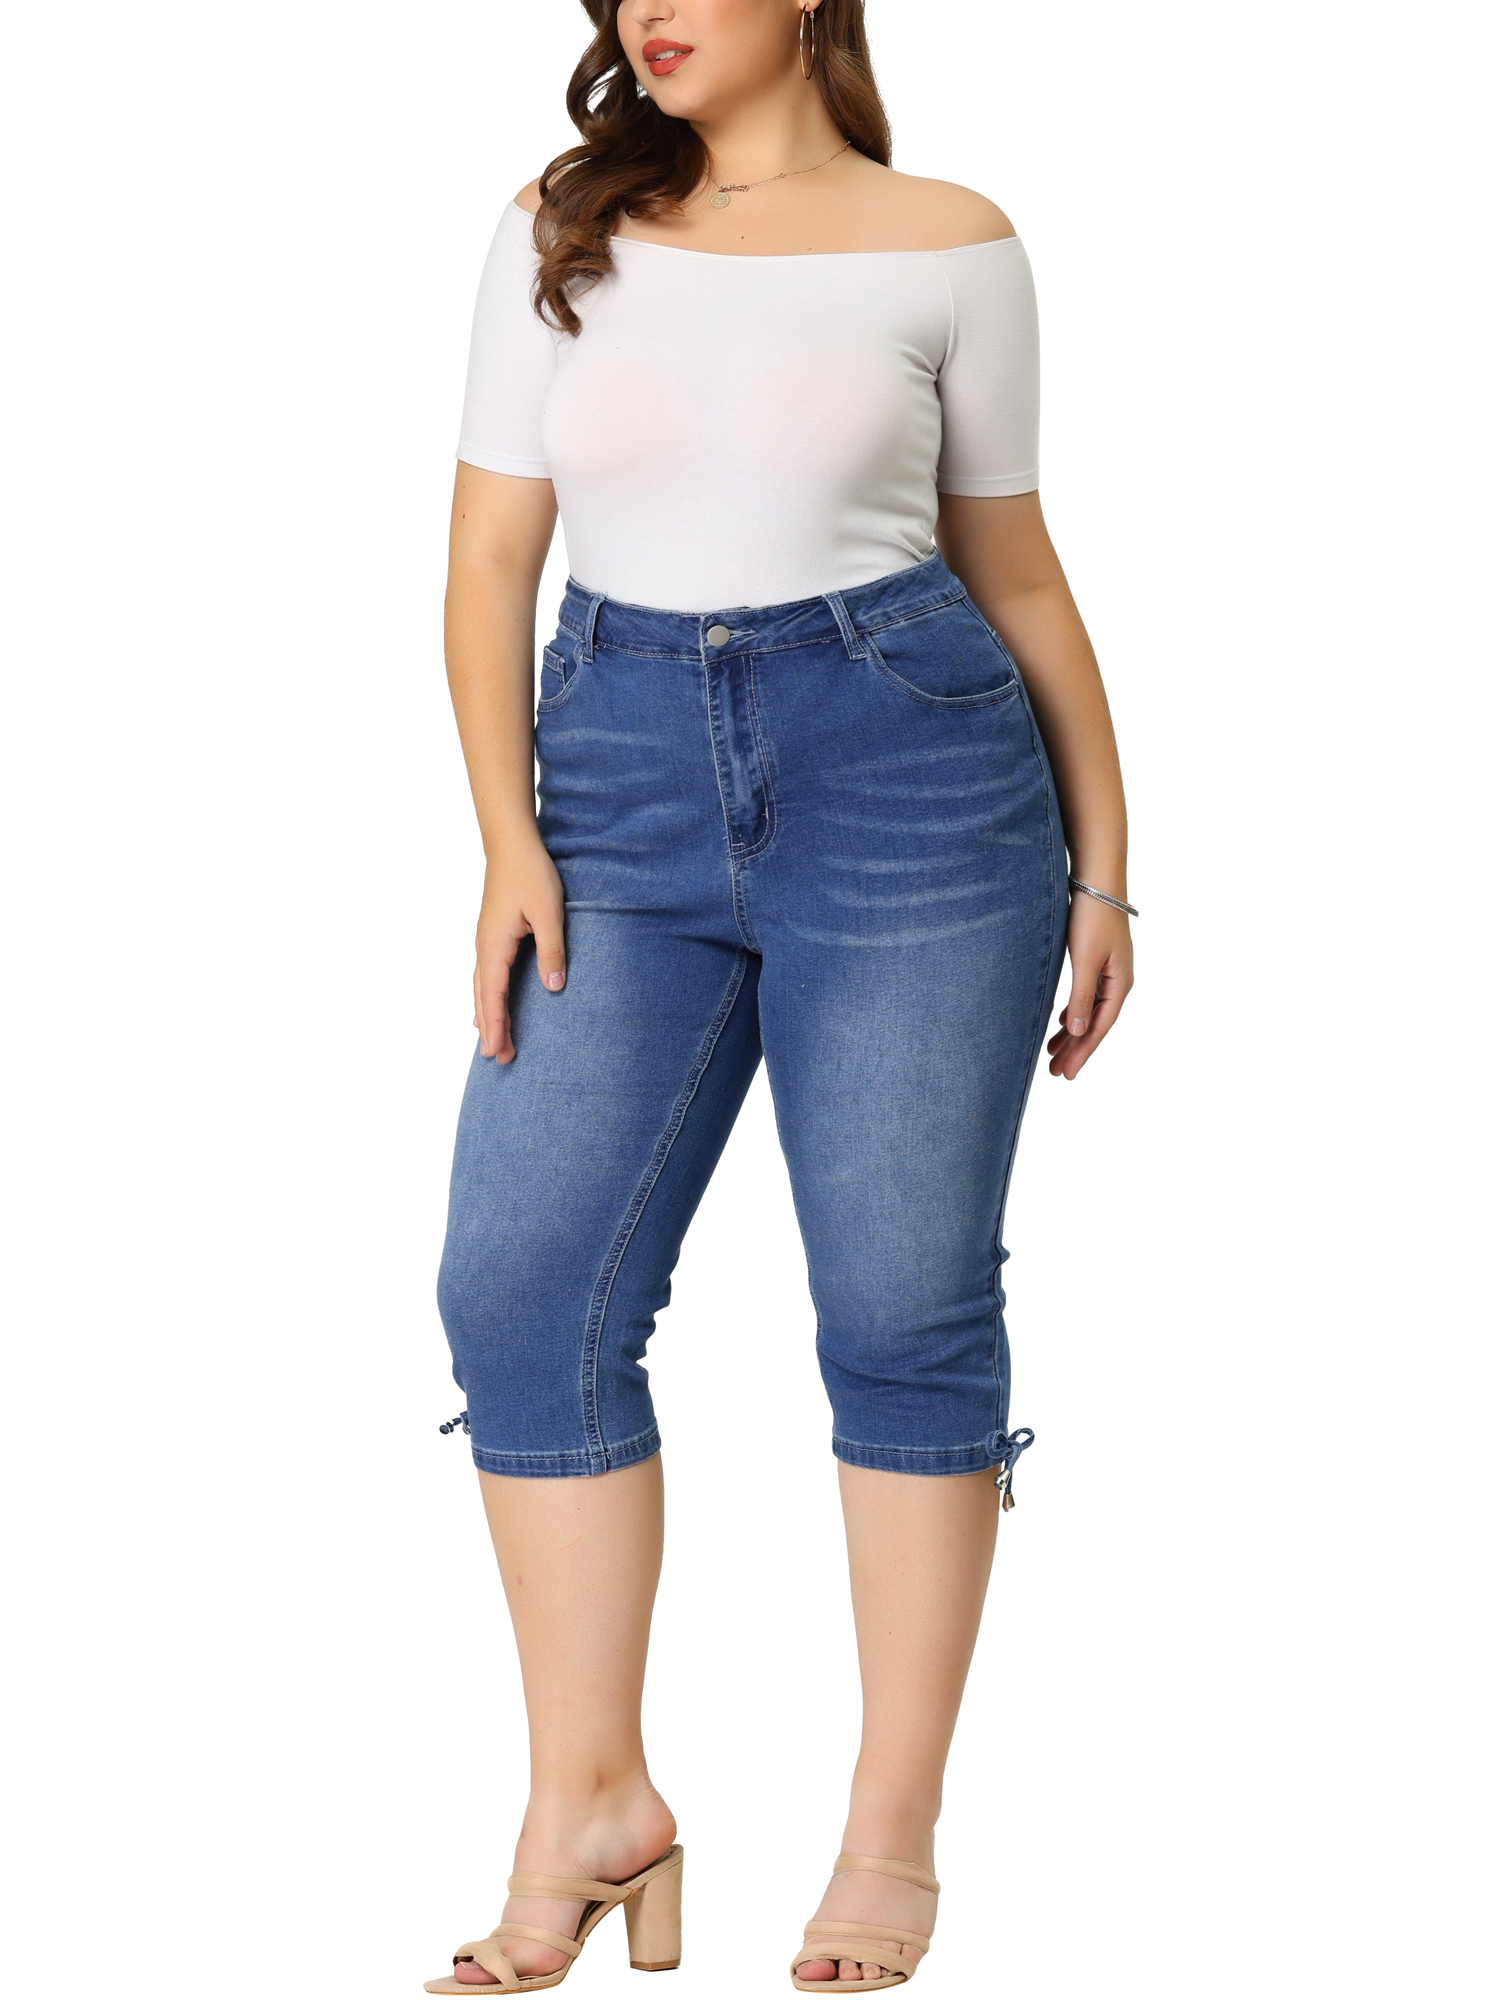 Unique Bargains Agnes Orinda Plus Size Denim Jeans for Women Mid Rise Fray Casual Cropped Jean Pants